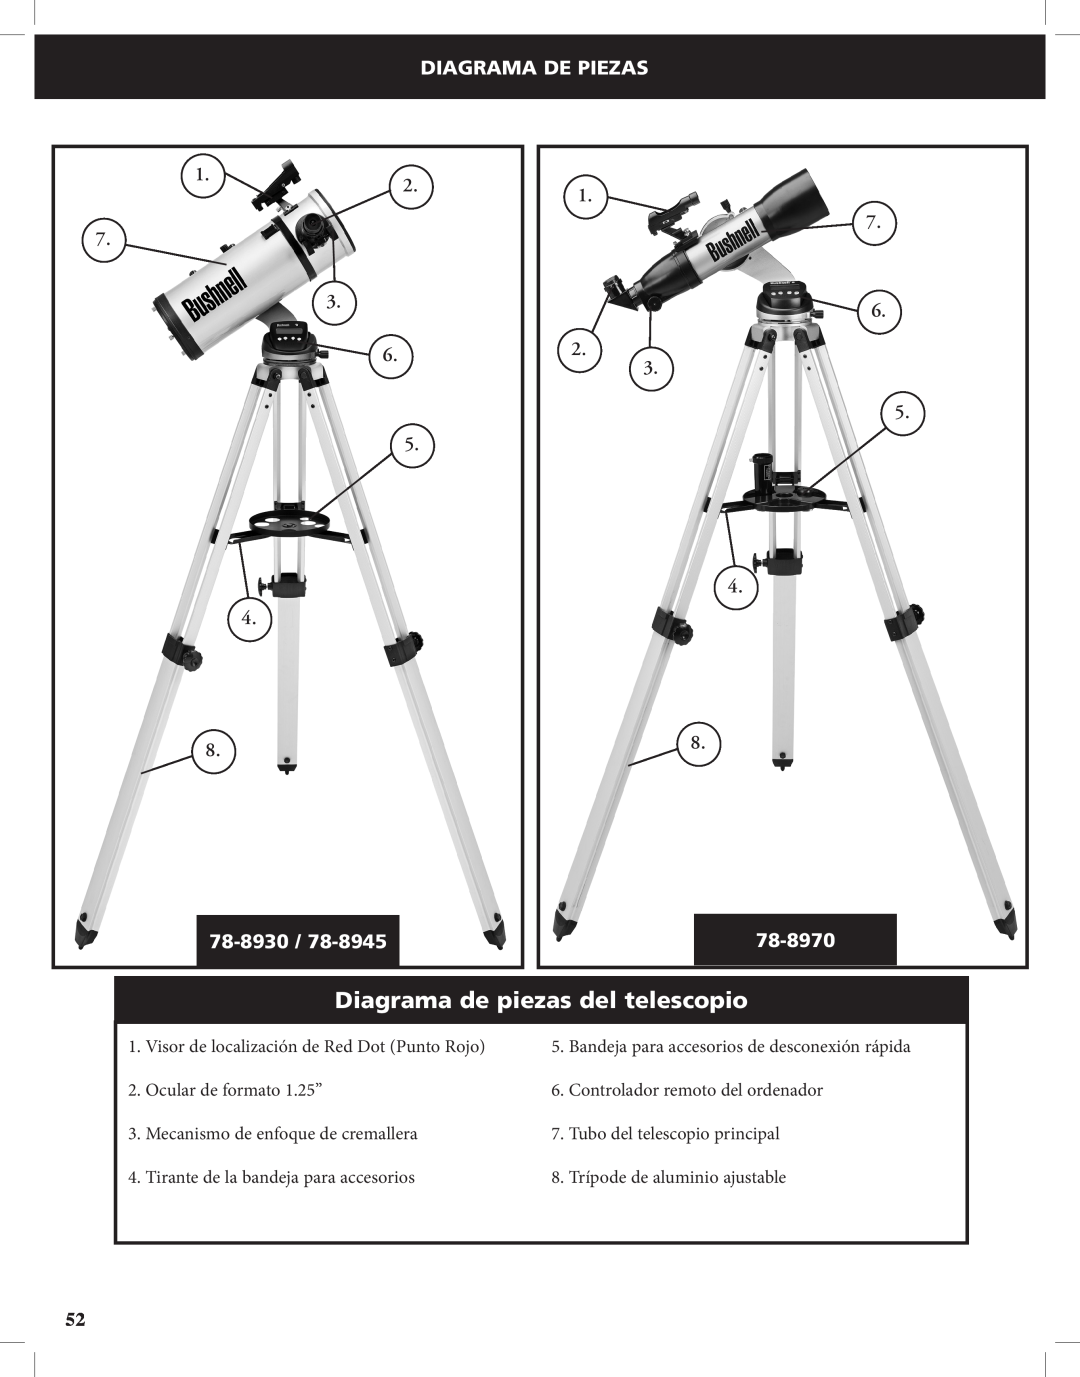 Bushnell Discoverer Diagrama de piezas del telescopio, Diagrama De Piezas, 1.2 7 3 6 5 4 8, 1 7 6 2 3 5 4 8, 78-8930 